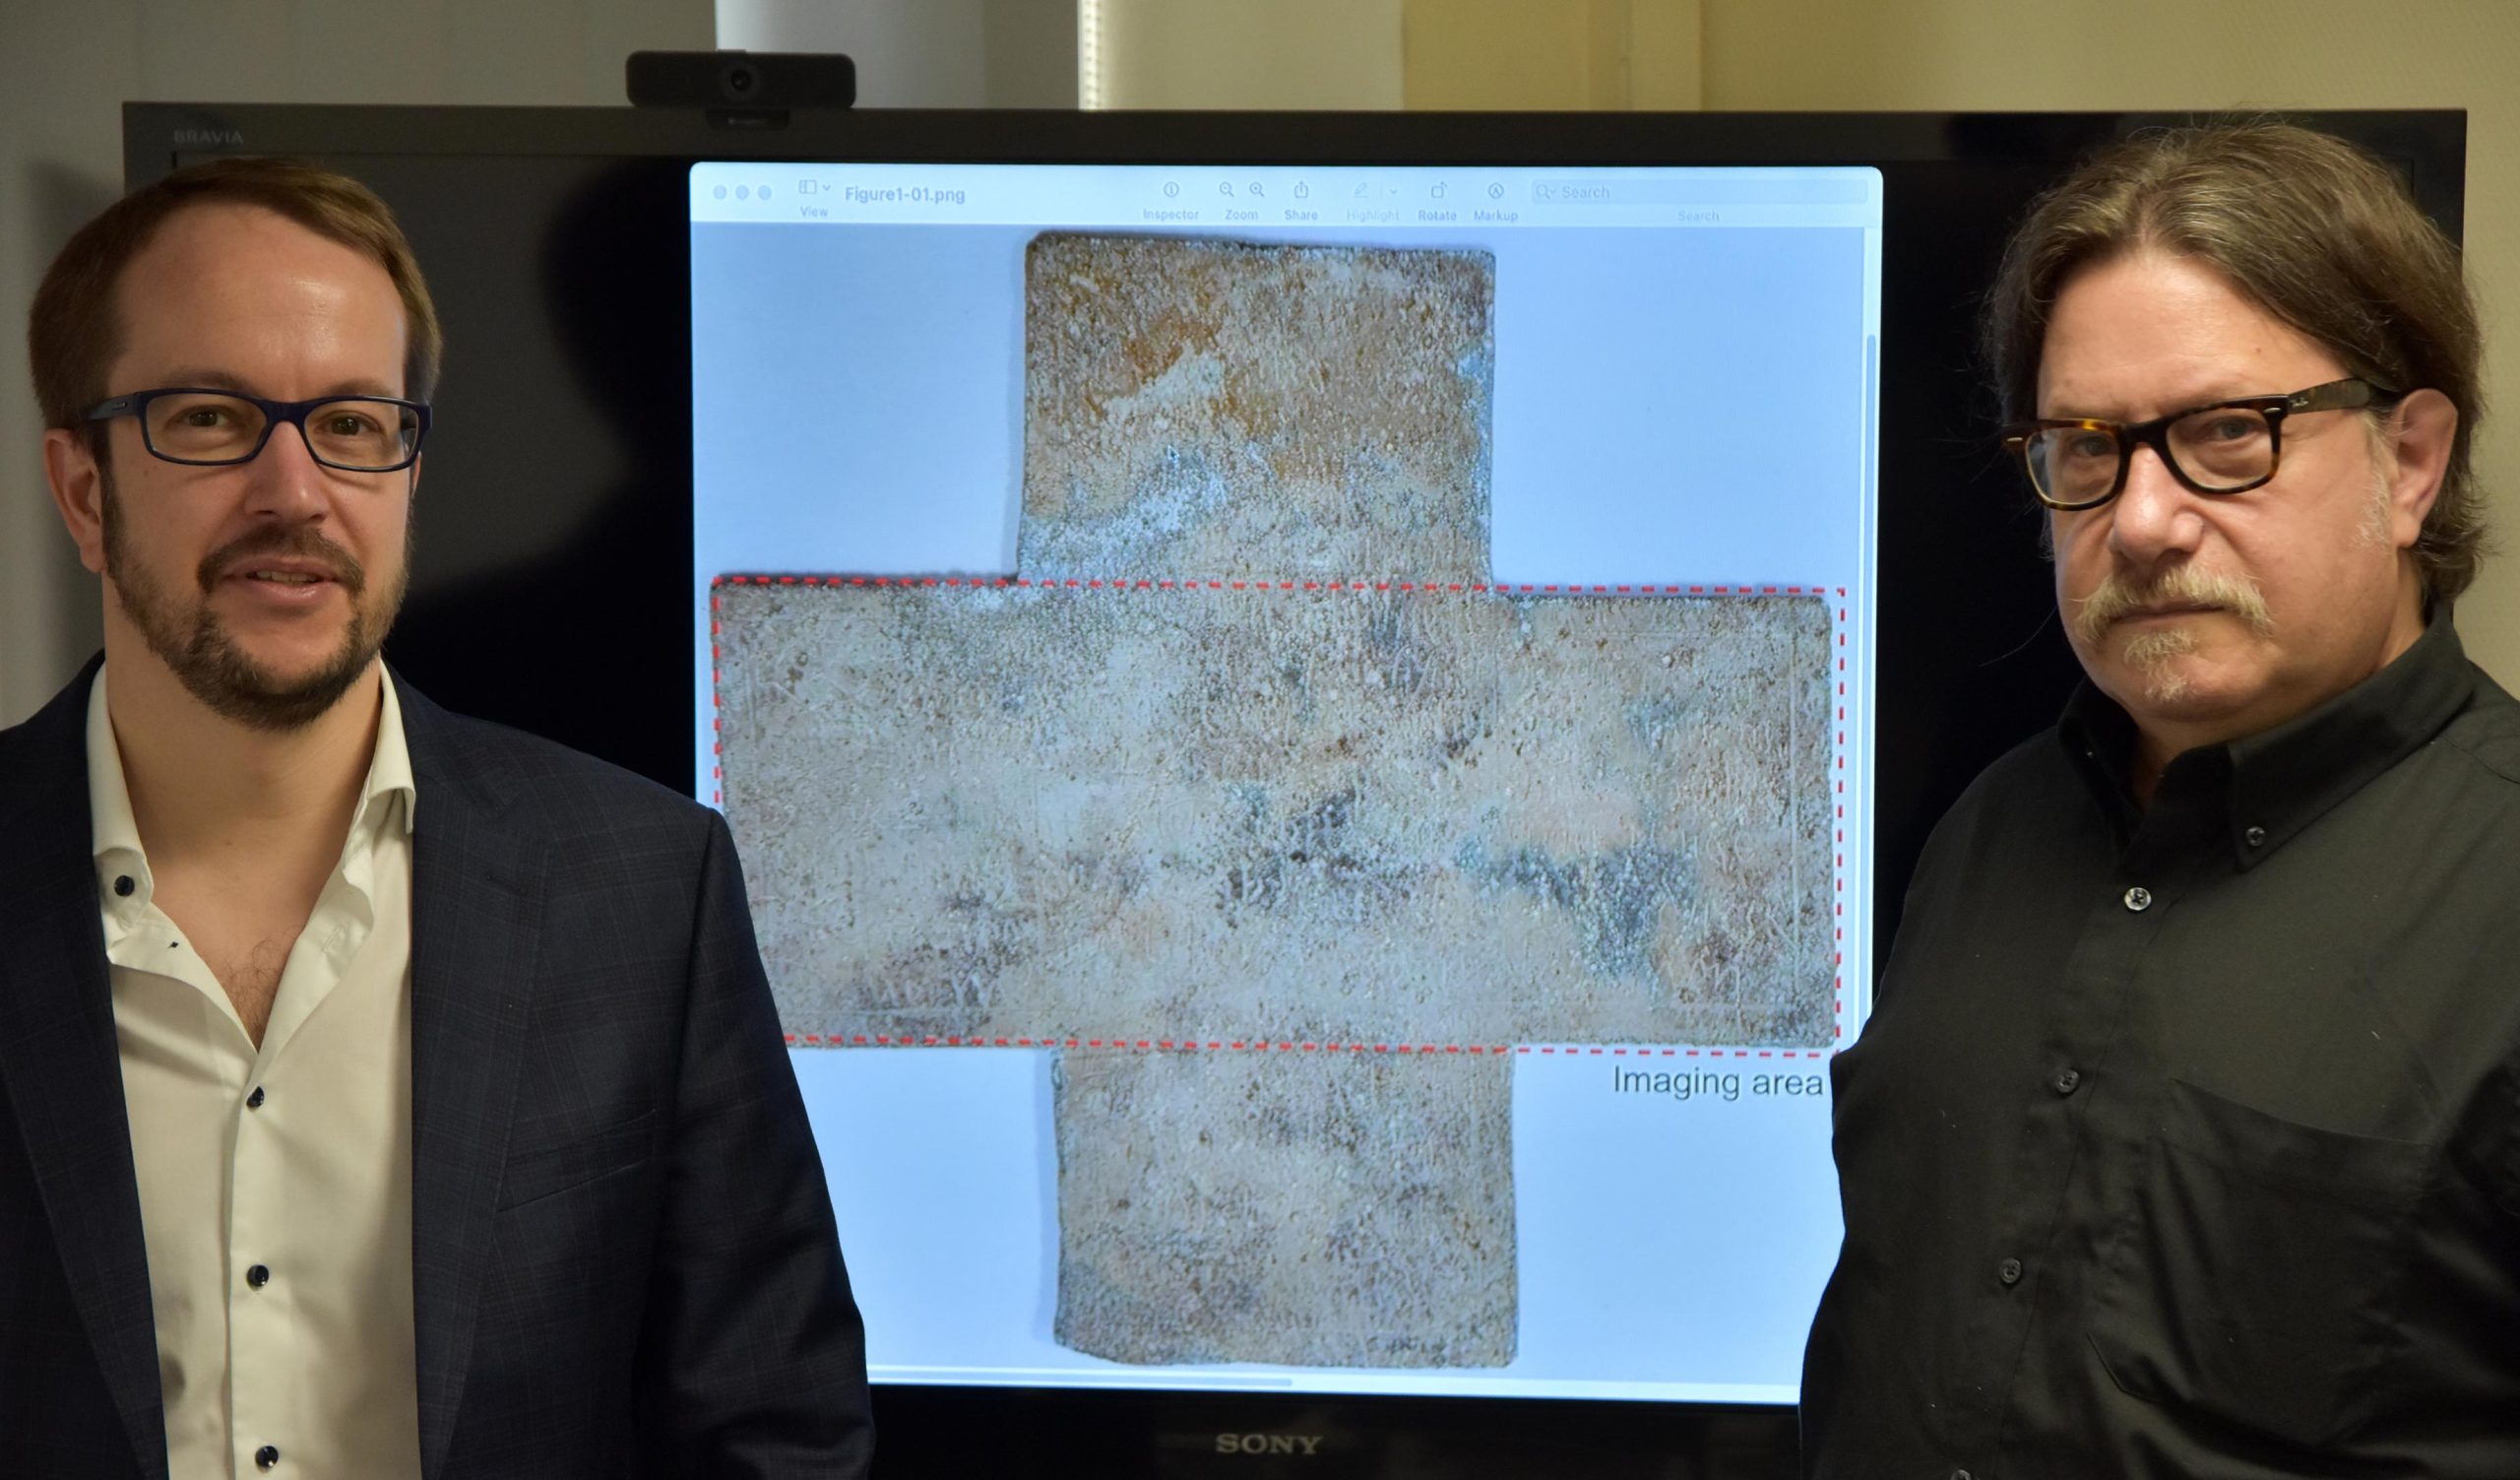 佐治亚理工学院教授David Citrin（右）和兼职教授Alexandre Locquet站在他们研究中使用的16世纪葬礼十字架的图像前。资料来源：佐治亚理工